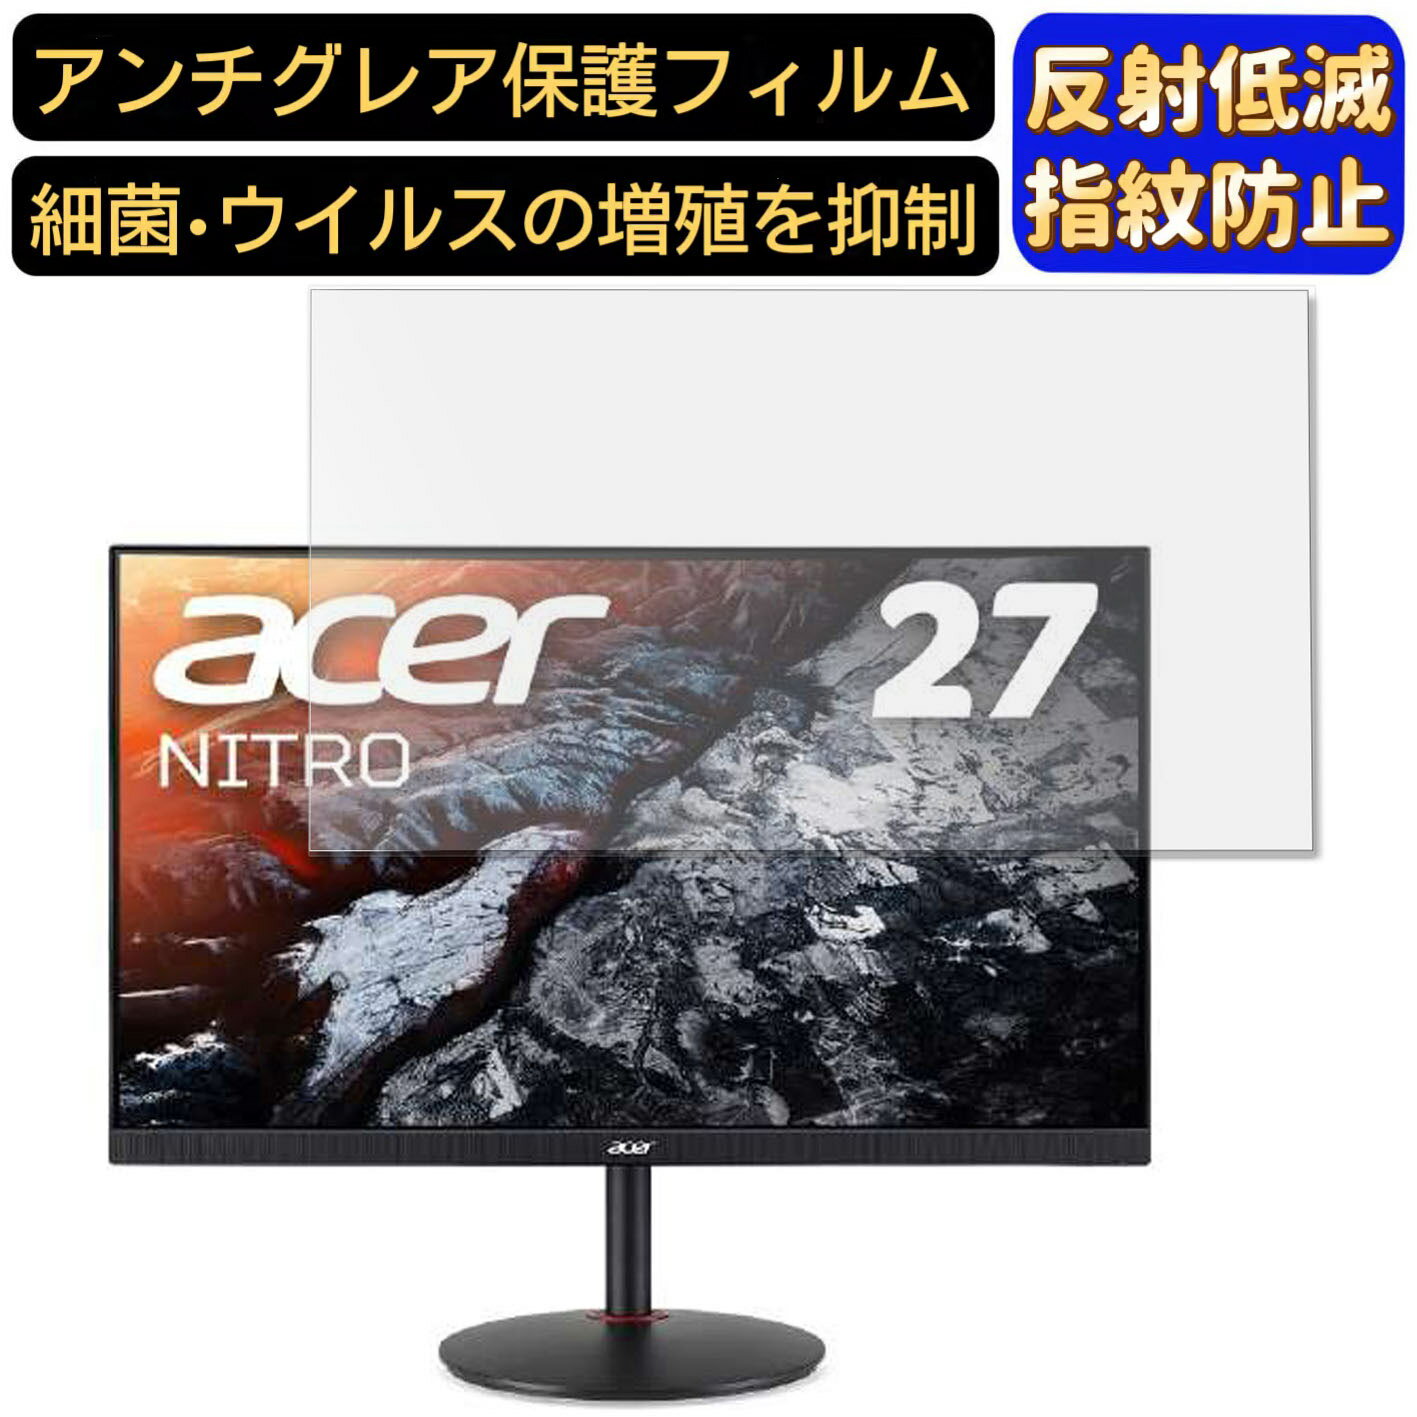 【ポイント2倍】Acer Nitro XV270Pbmiiprfx 